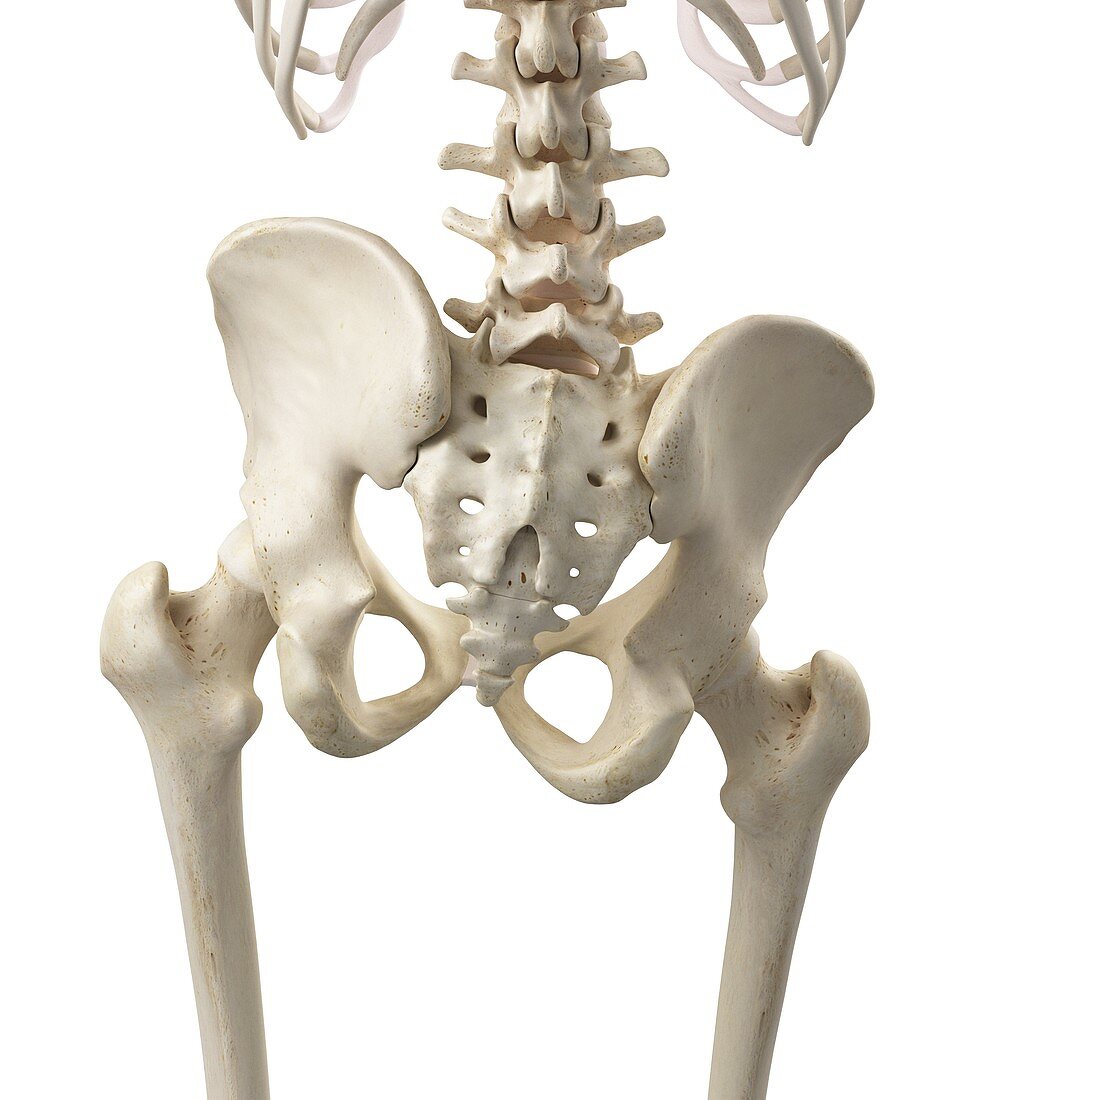 Illustration of a tilted pelvis